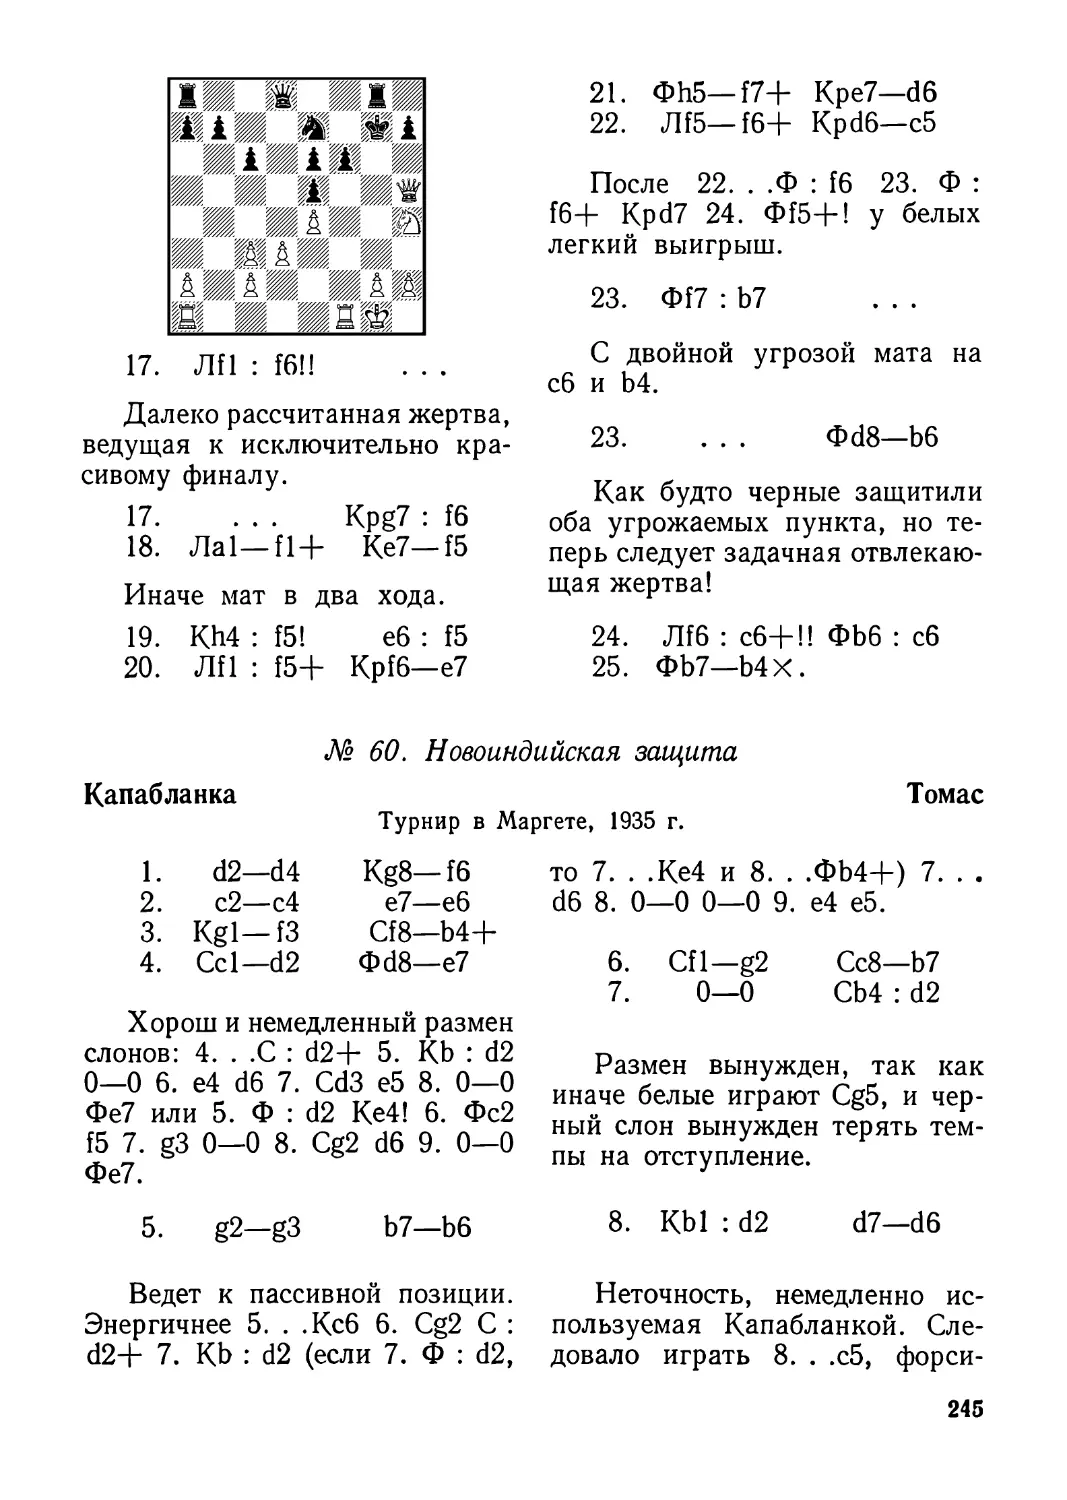 60.Капабланка—Томас, турнир в Маргете 1935 г.